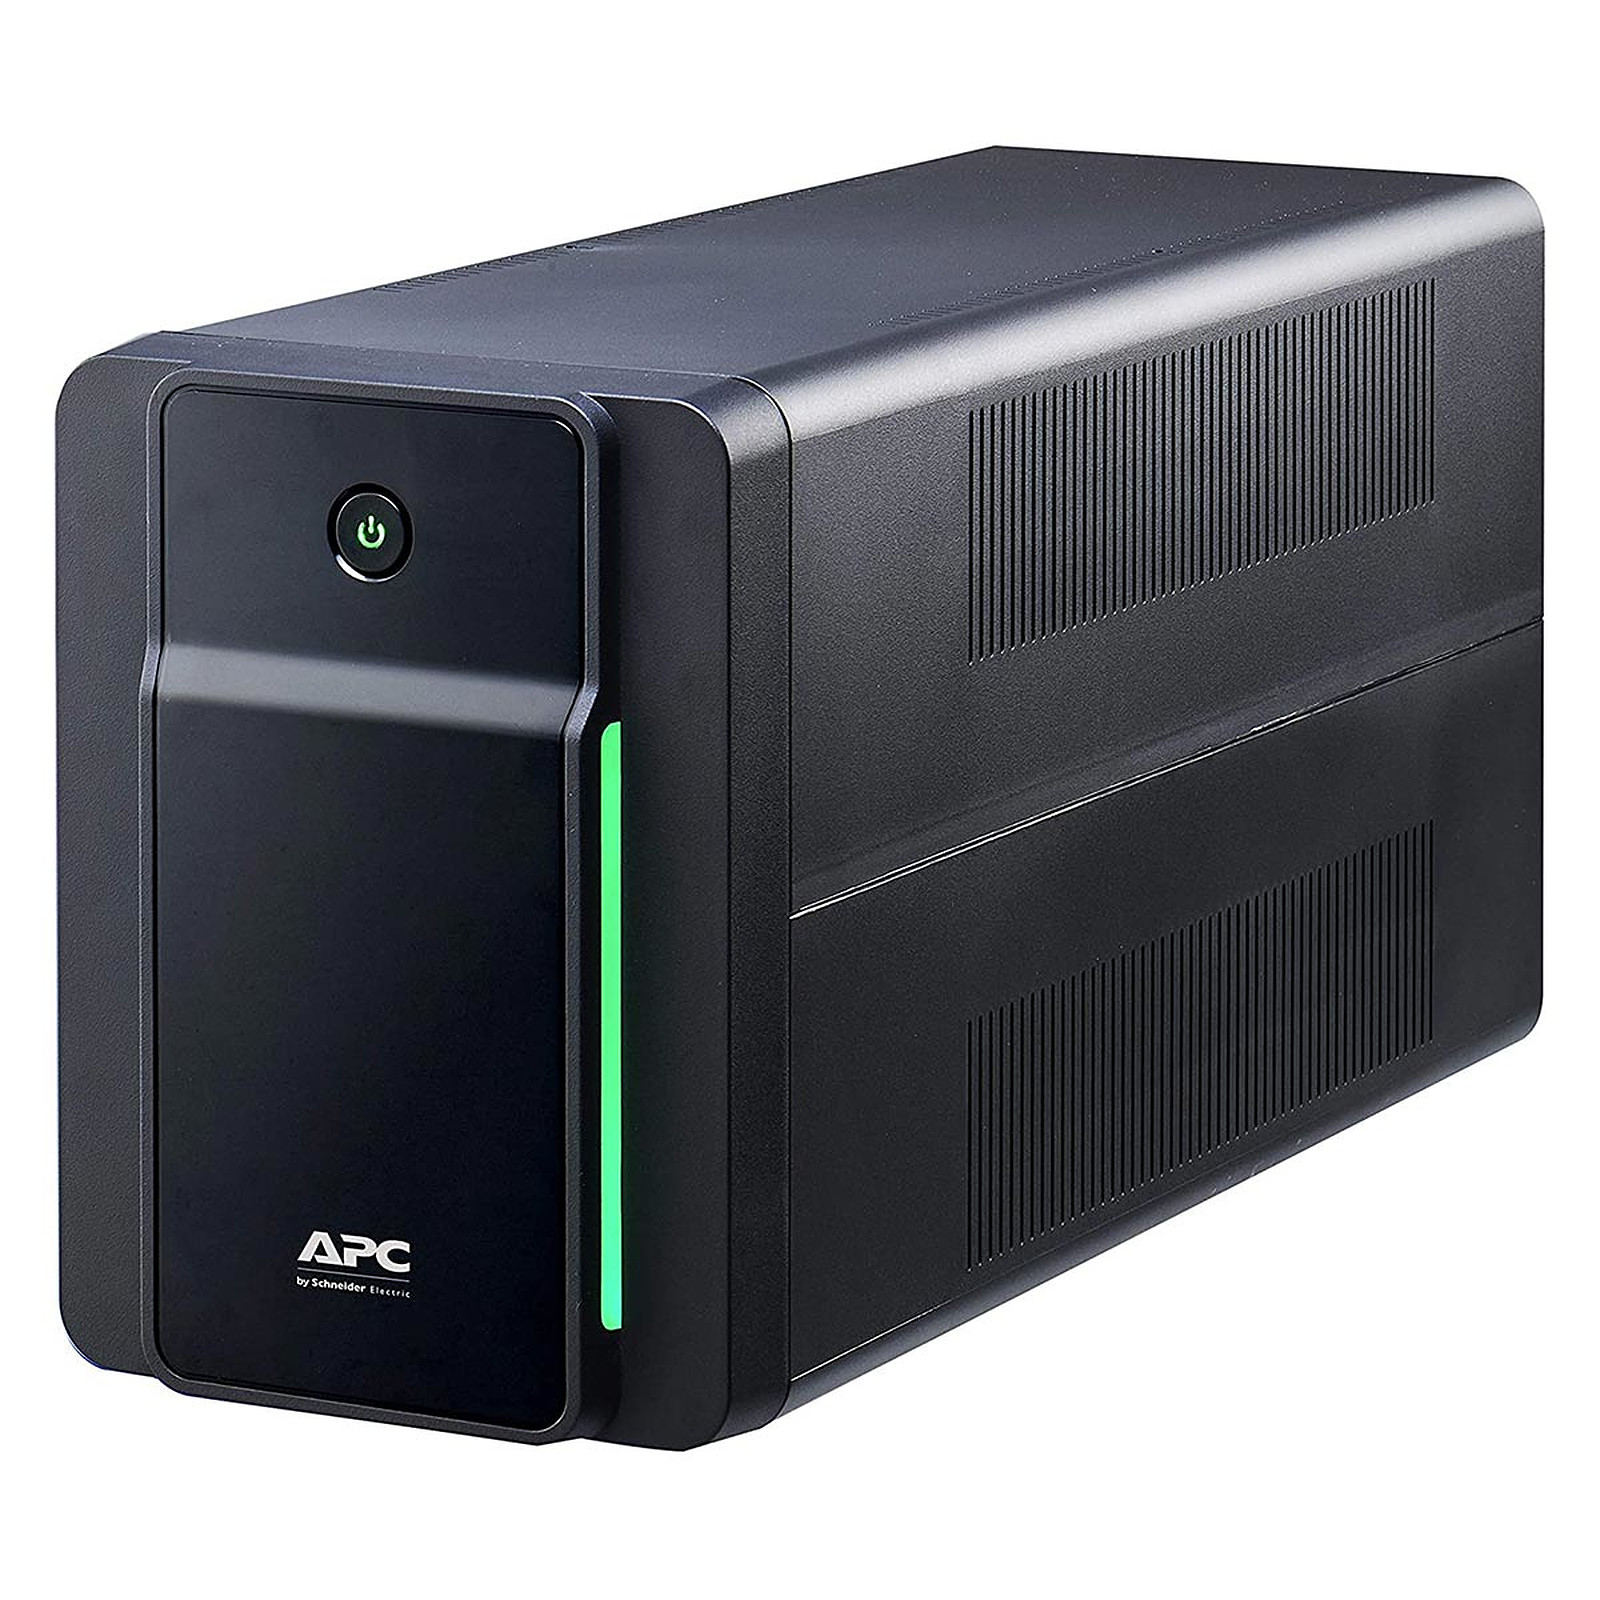 APC Back-UPS 1600VA, 230V, AVR, prises Schuko - Onduleur APC